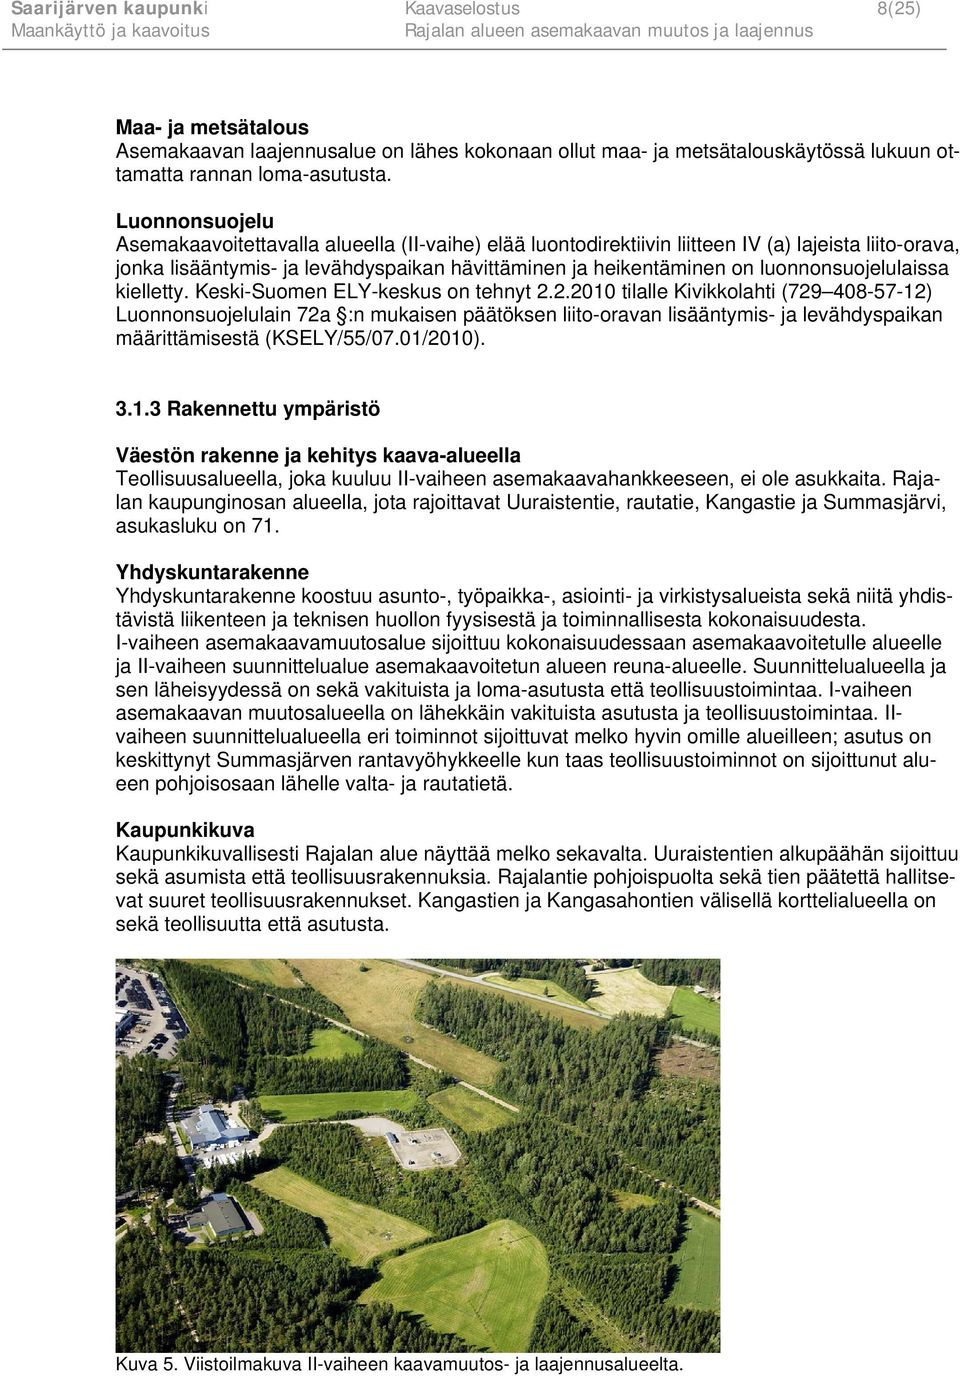 luonnonsuojelulaissa kielletty. Keski-Suomen ELY-keskus on tehnyt 2.